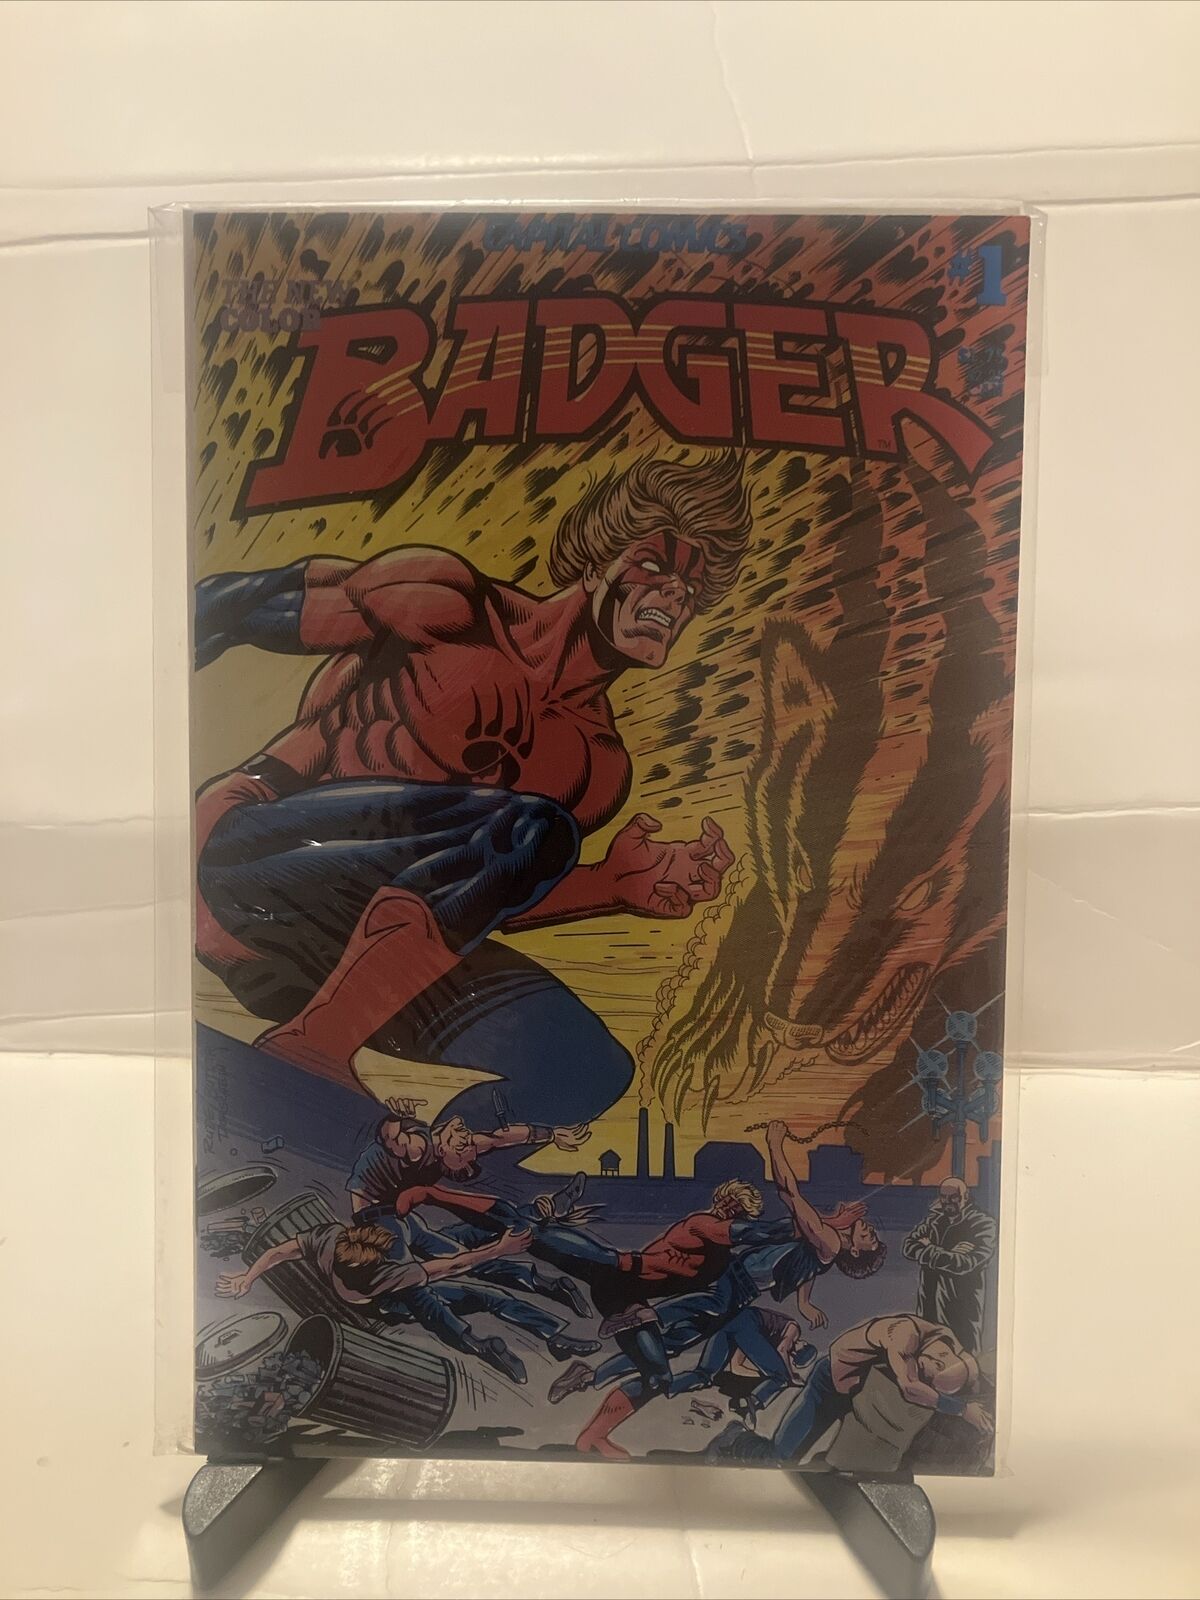 Badger #1 (1983 Capital Comics)